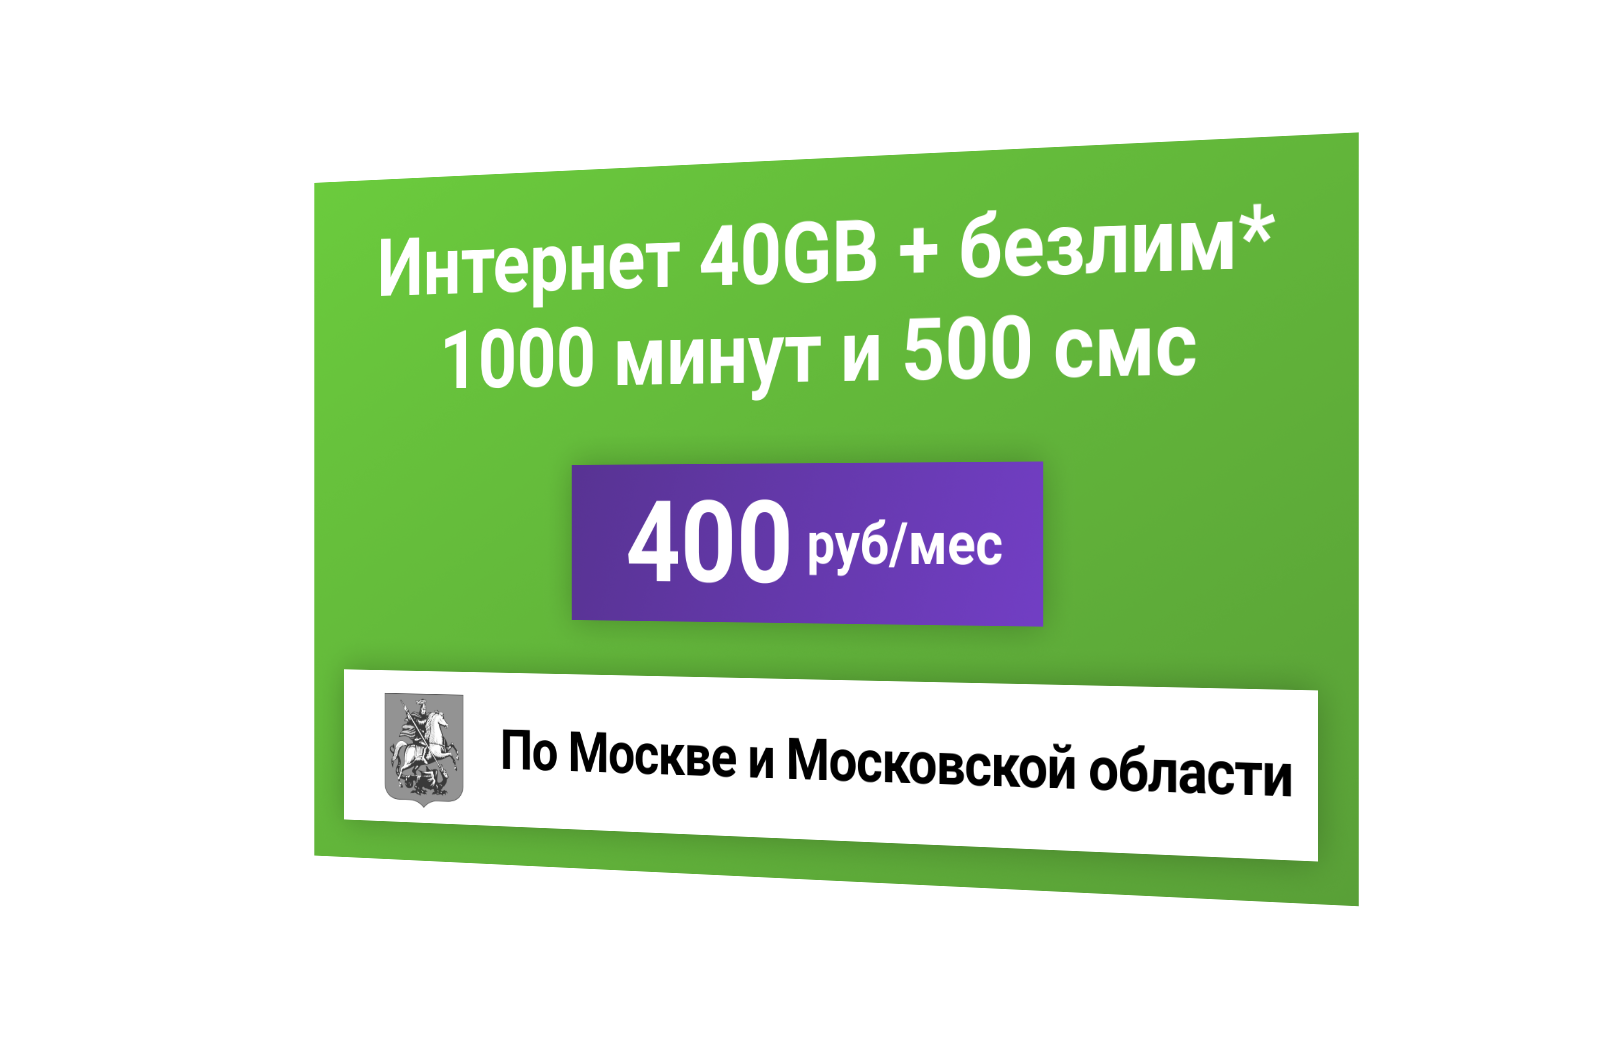 Сим-карта / 1000 минут + 500с + 40GB + безлимит на мессенджеры - 400 р/мес тариф дляартфона (Москва и МО)